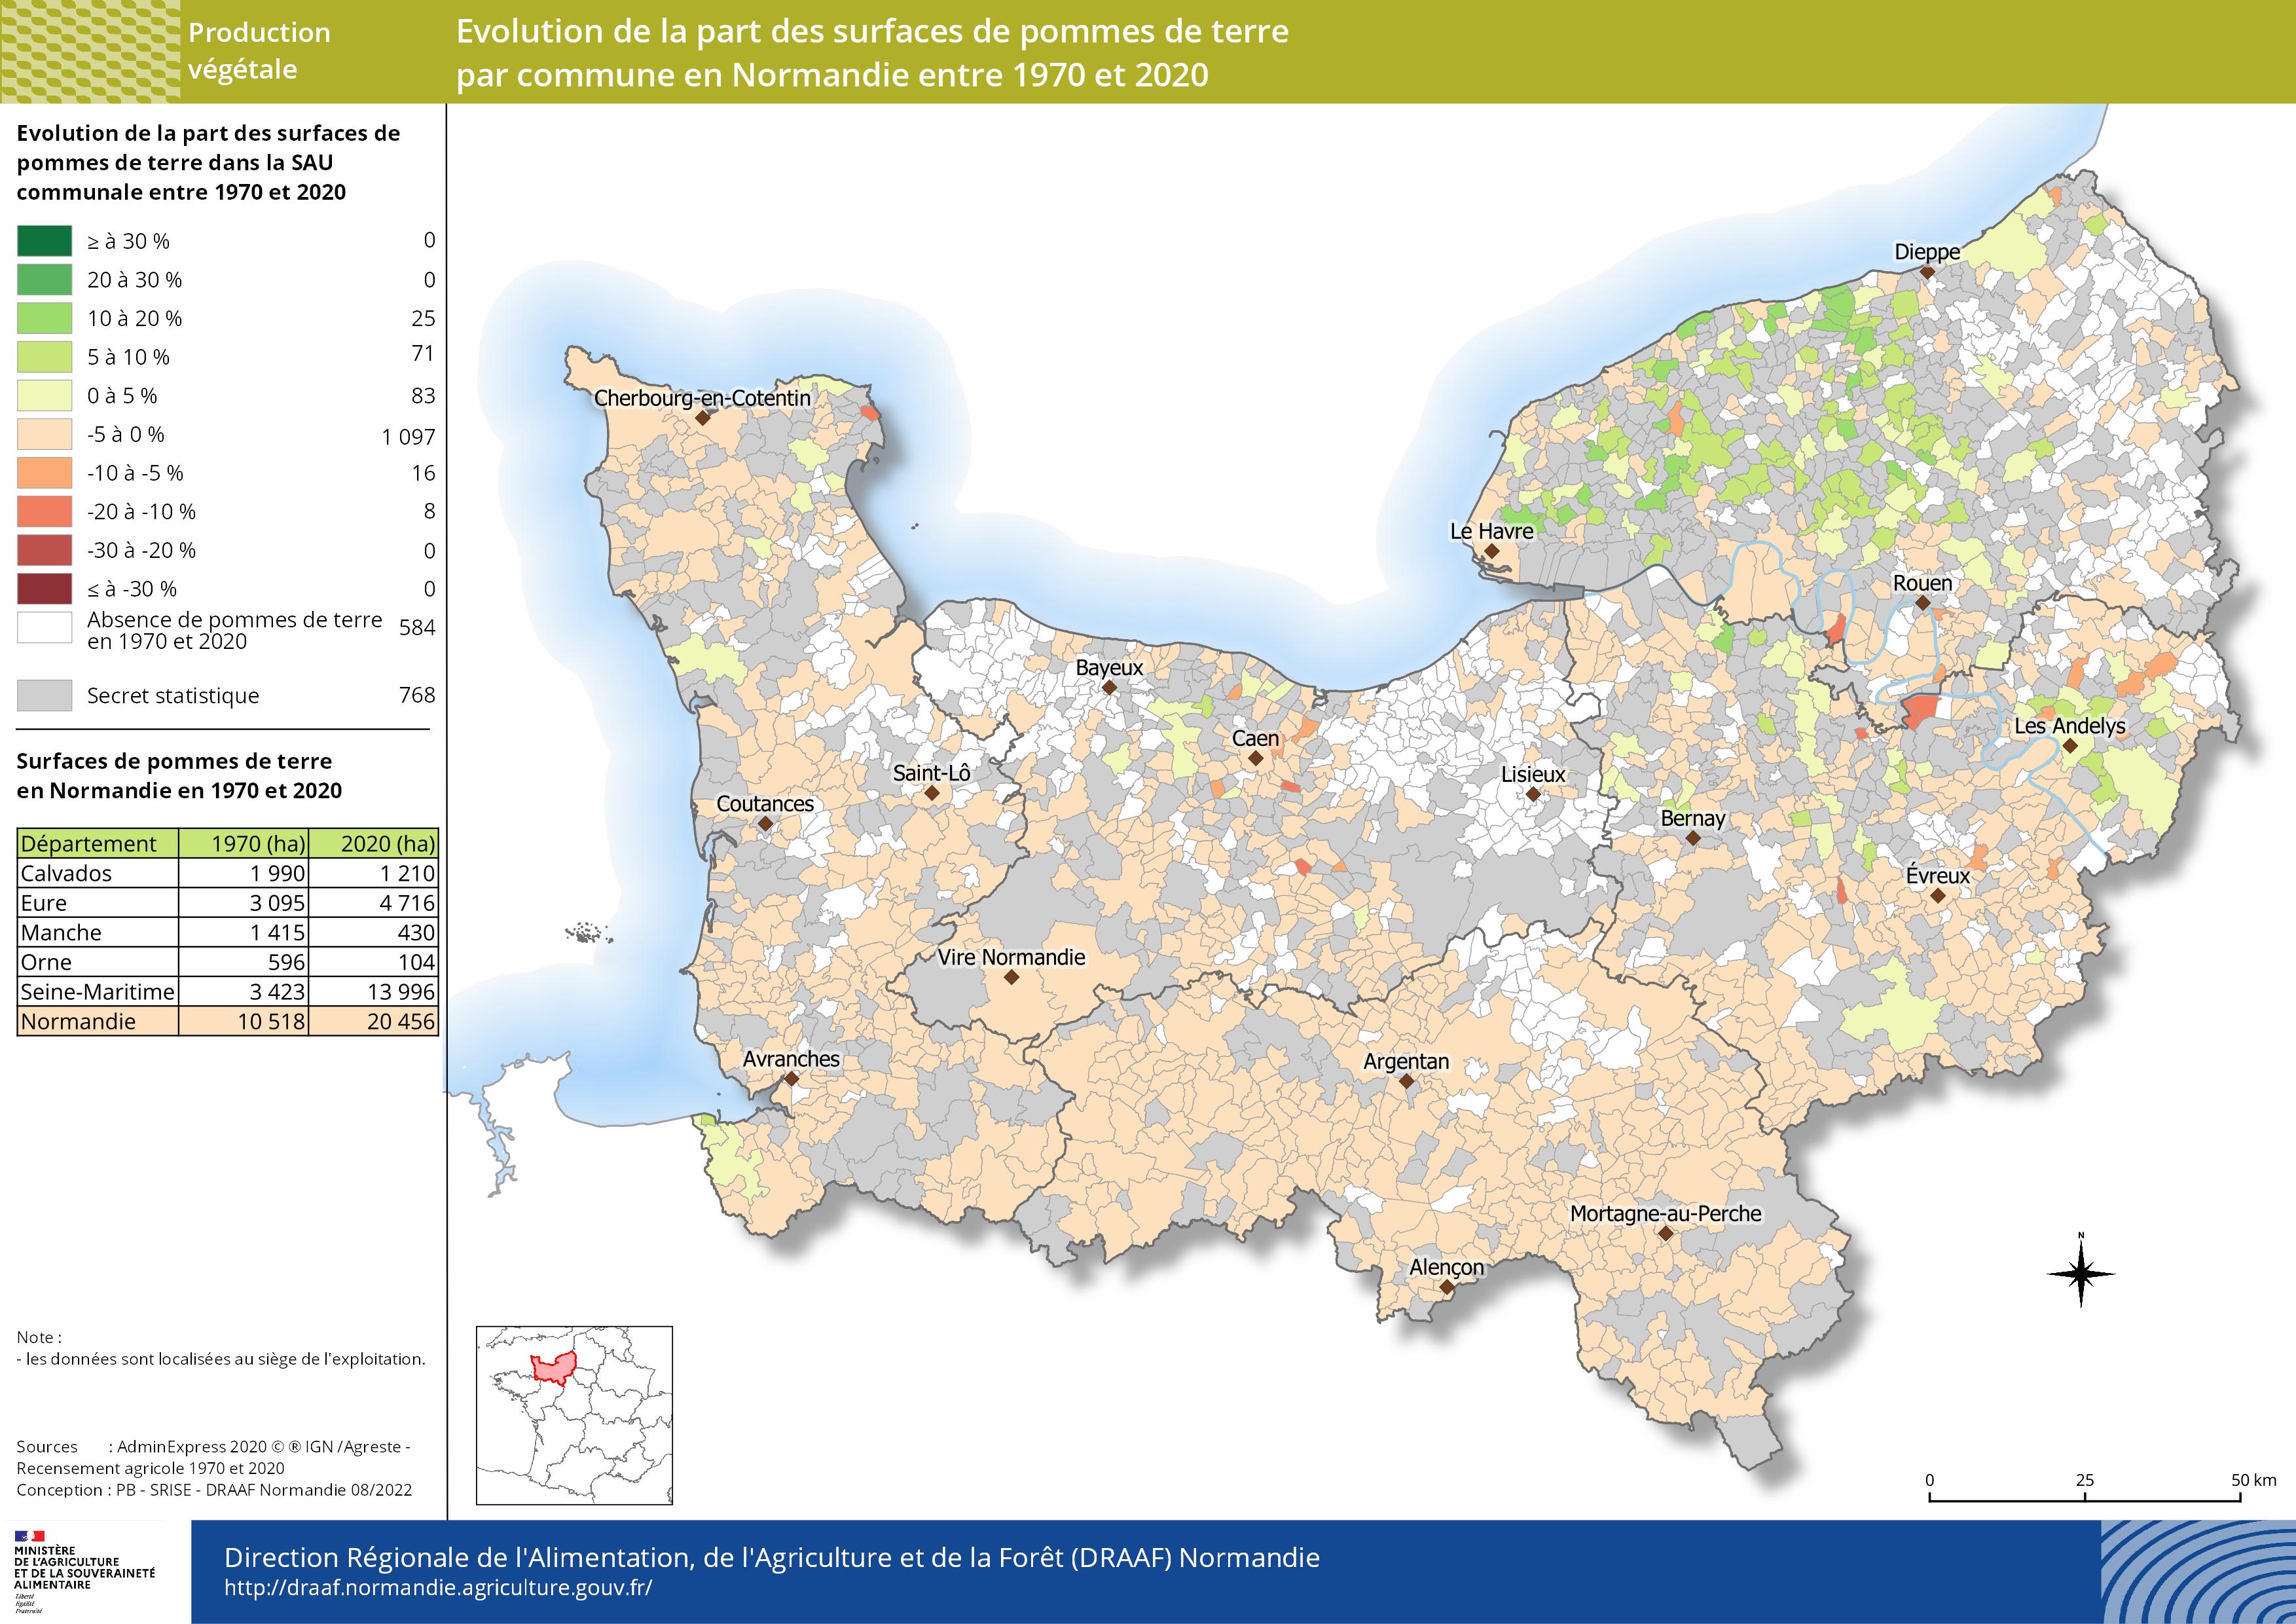 carte représentant l'évolution de la part des surfaces de pommes de terre par commune en Normandie entre 1970 et 2020